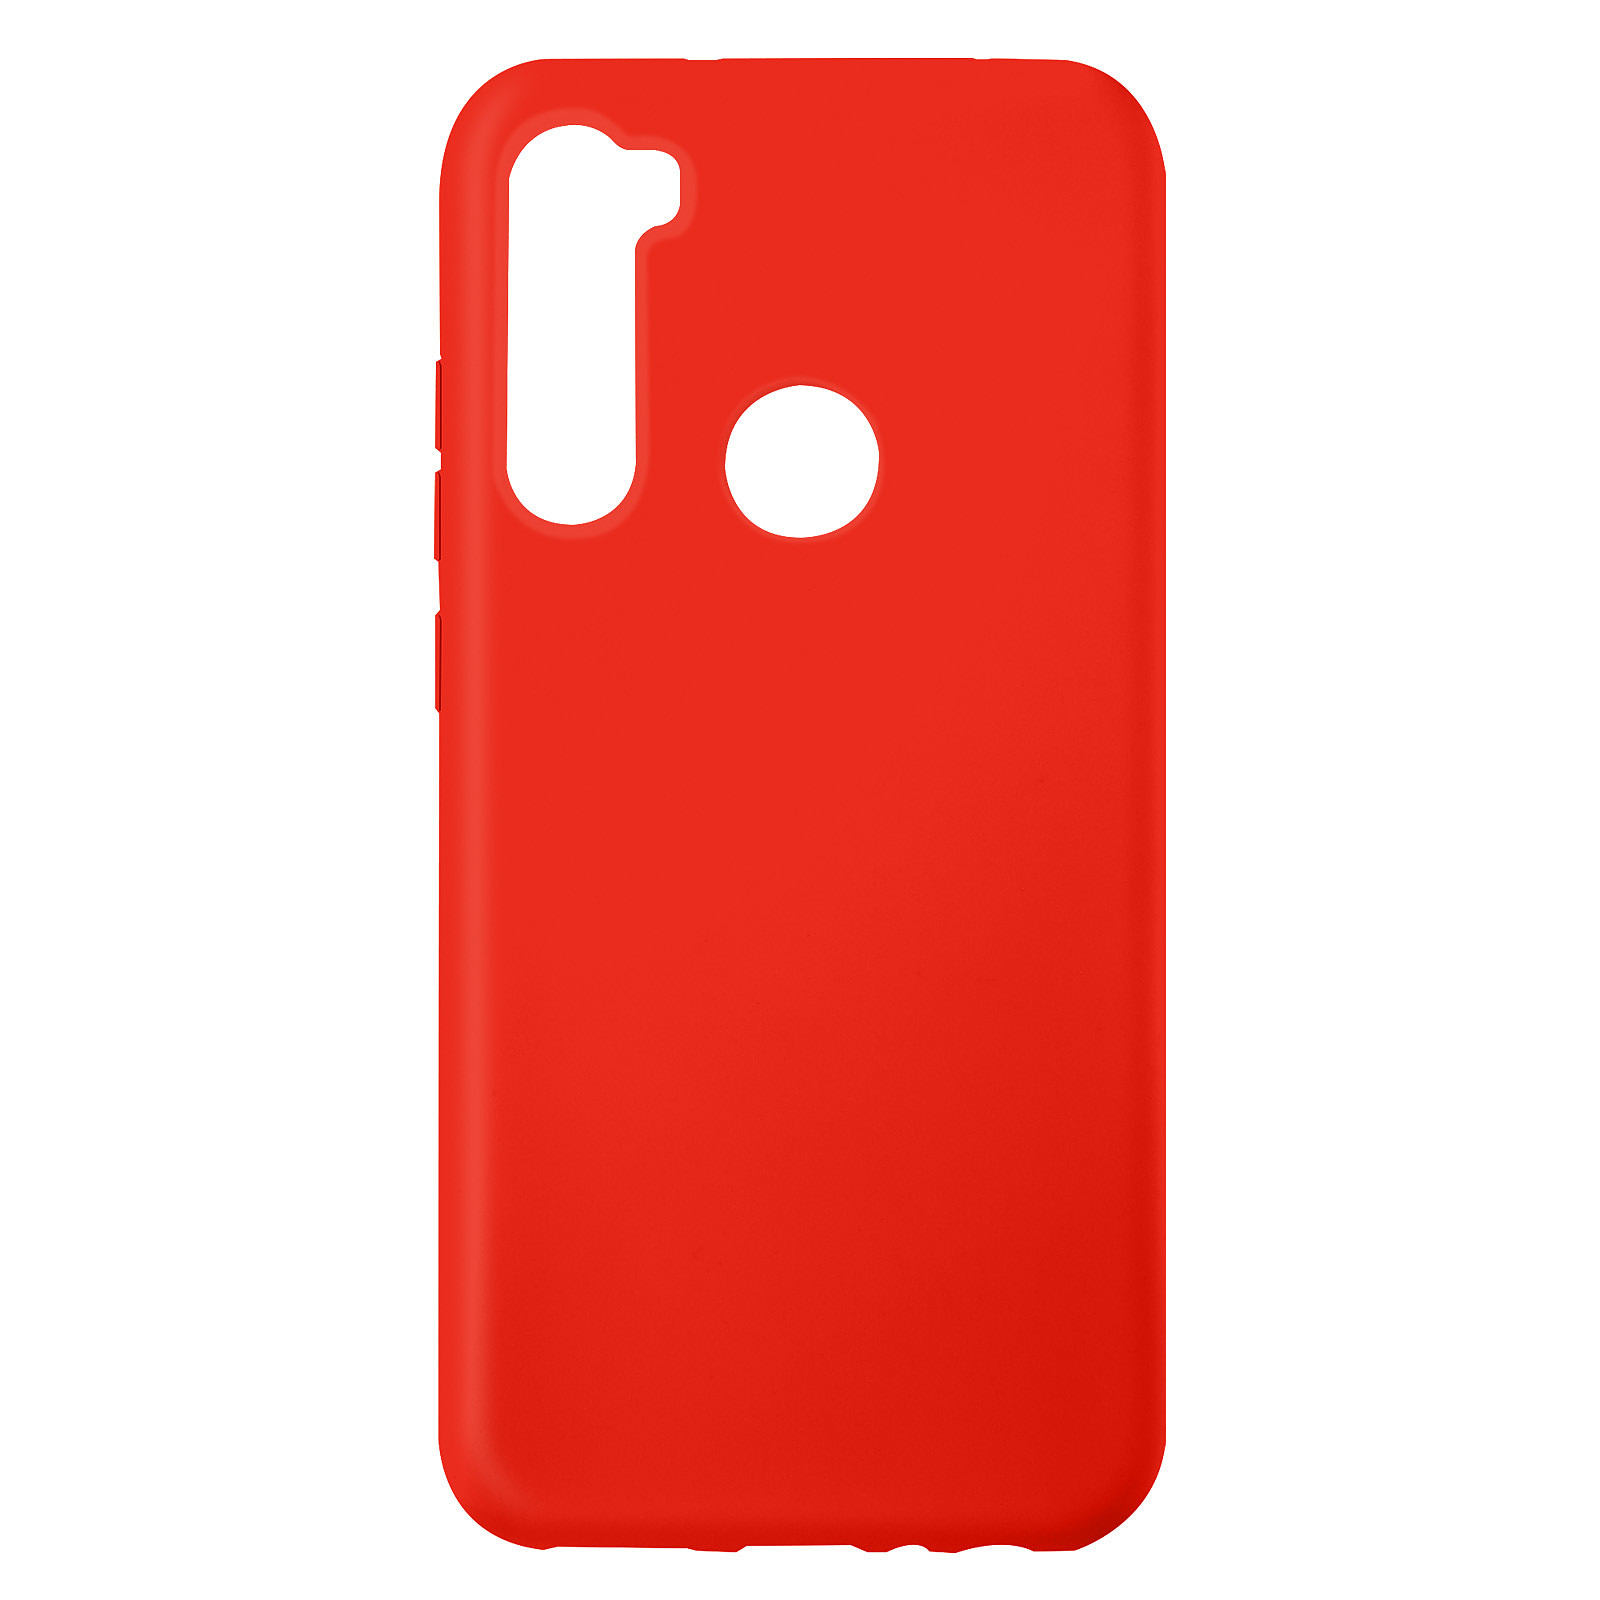 Avizar Coque pour Xiaomi Redmi Note 8 Silicone Semi-rigide Finition Soft-touch Fine Rouge - Coque telephone Avizar